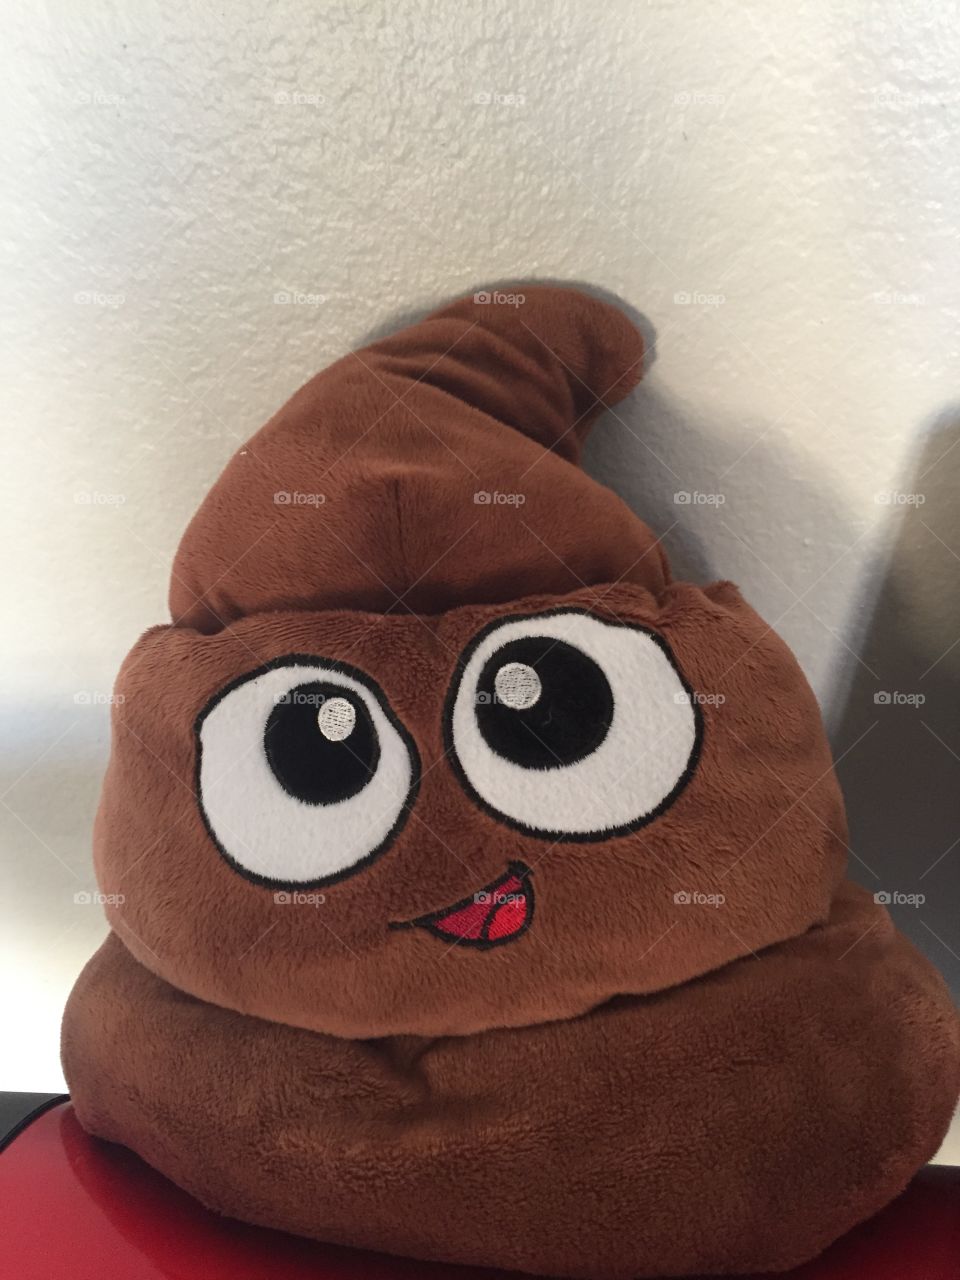 Poop can be cute too! Poop emoji power!🤪